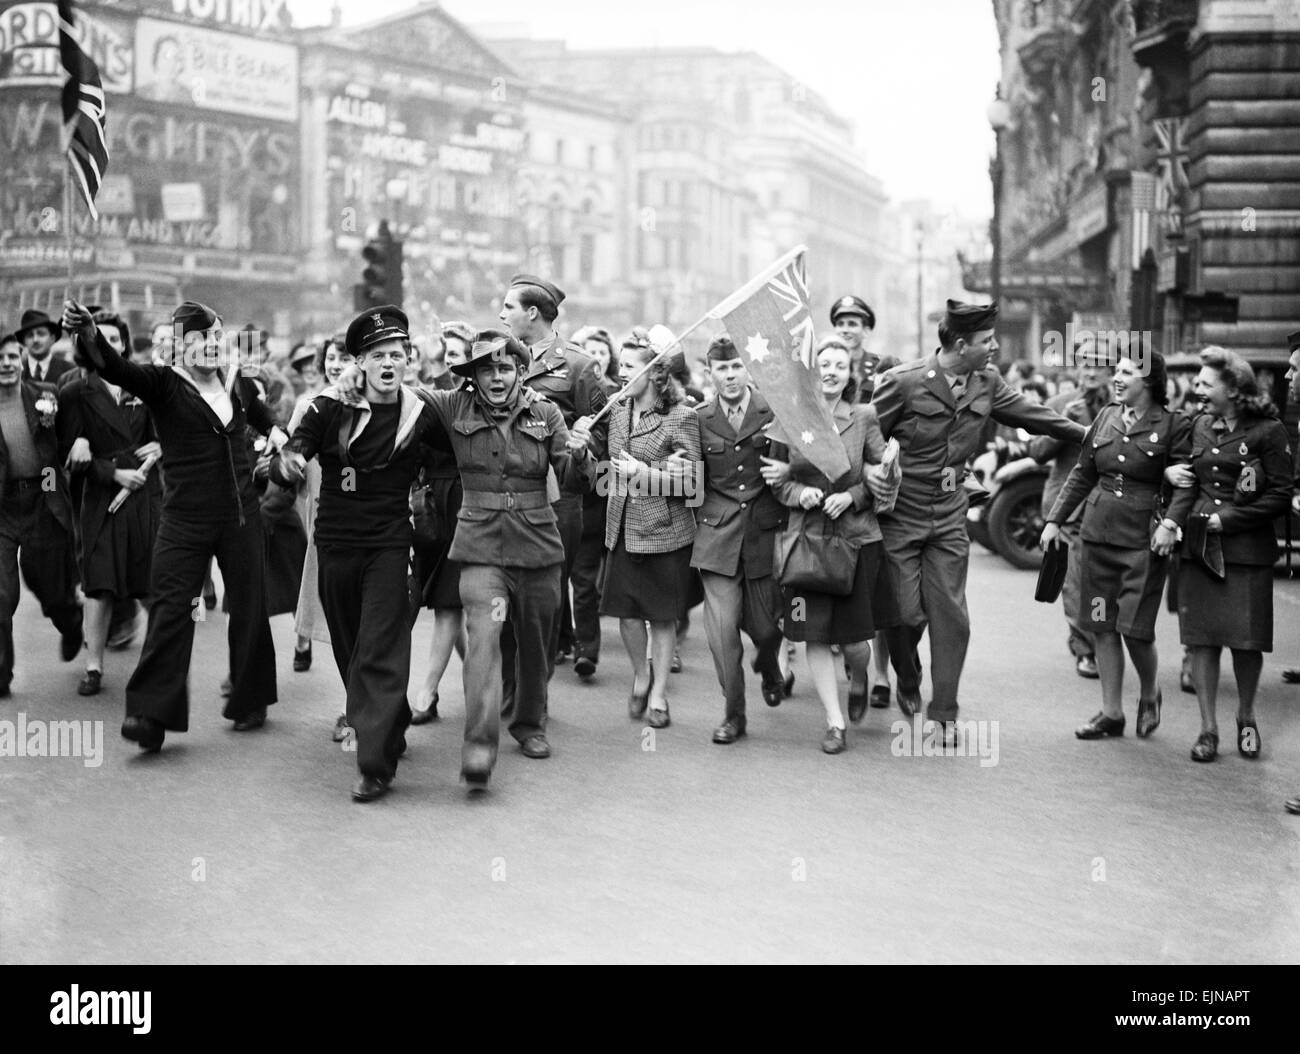 Célébrations du Jour de la victoire à Londres à la fin de la Seconde Guerre mondiale. Des foules immenses se sont réunis autour de Piccadilly Circus au cours des célébrations avec des militaires et des femmes agitant leurs drapeaux du pays. 8e mai 1945. Banque D'Images